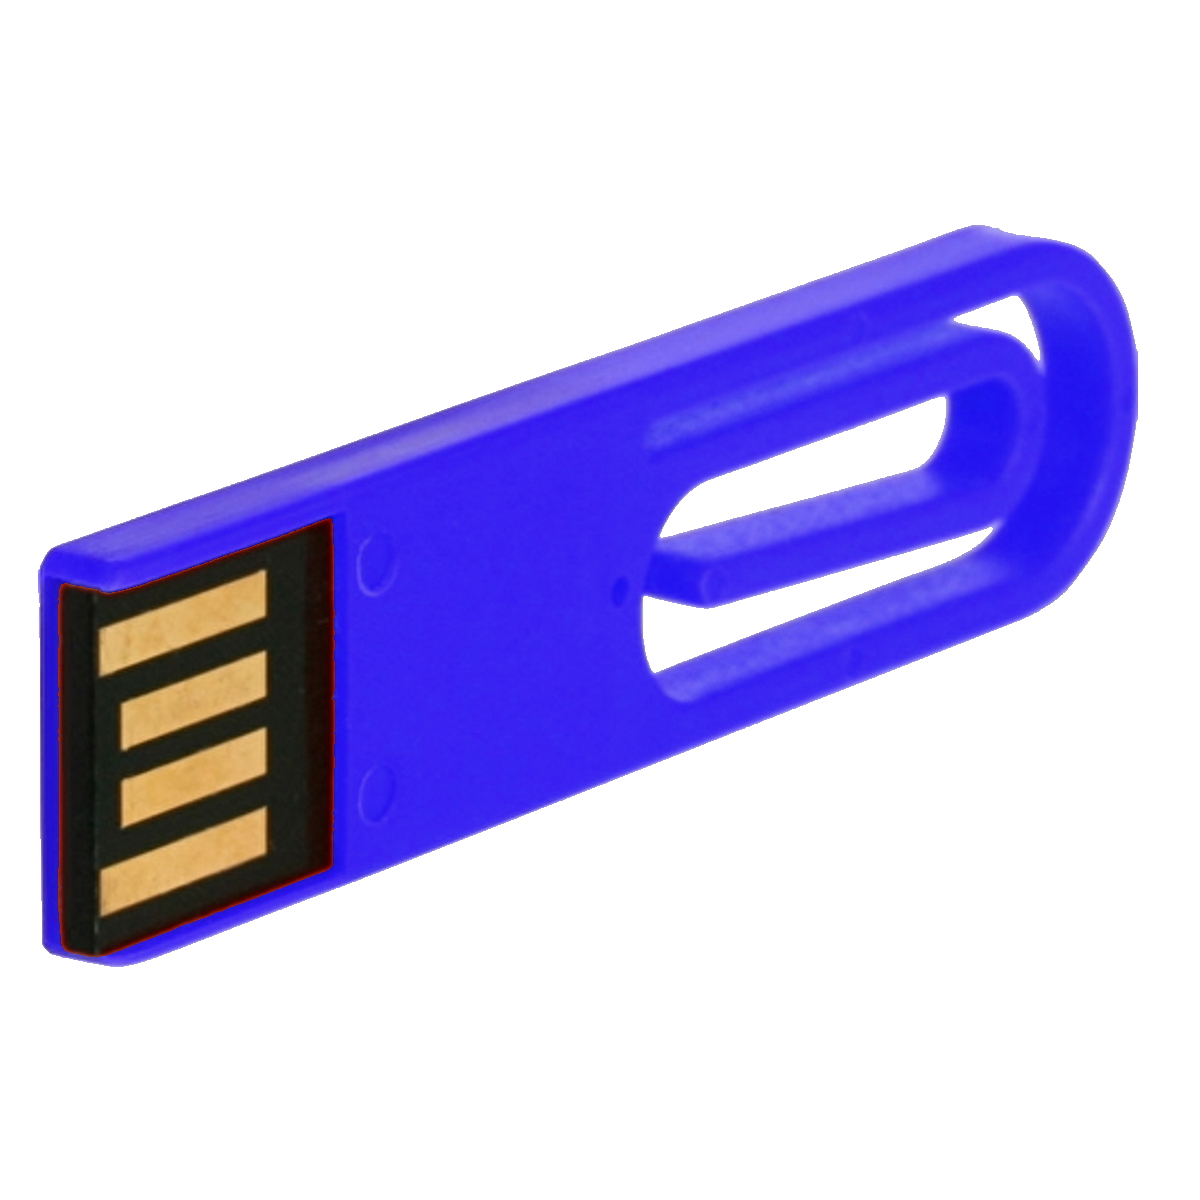 ® GB) 2 (Blau, USB-Stick eCLIP USB GERMANY